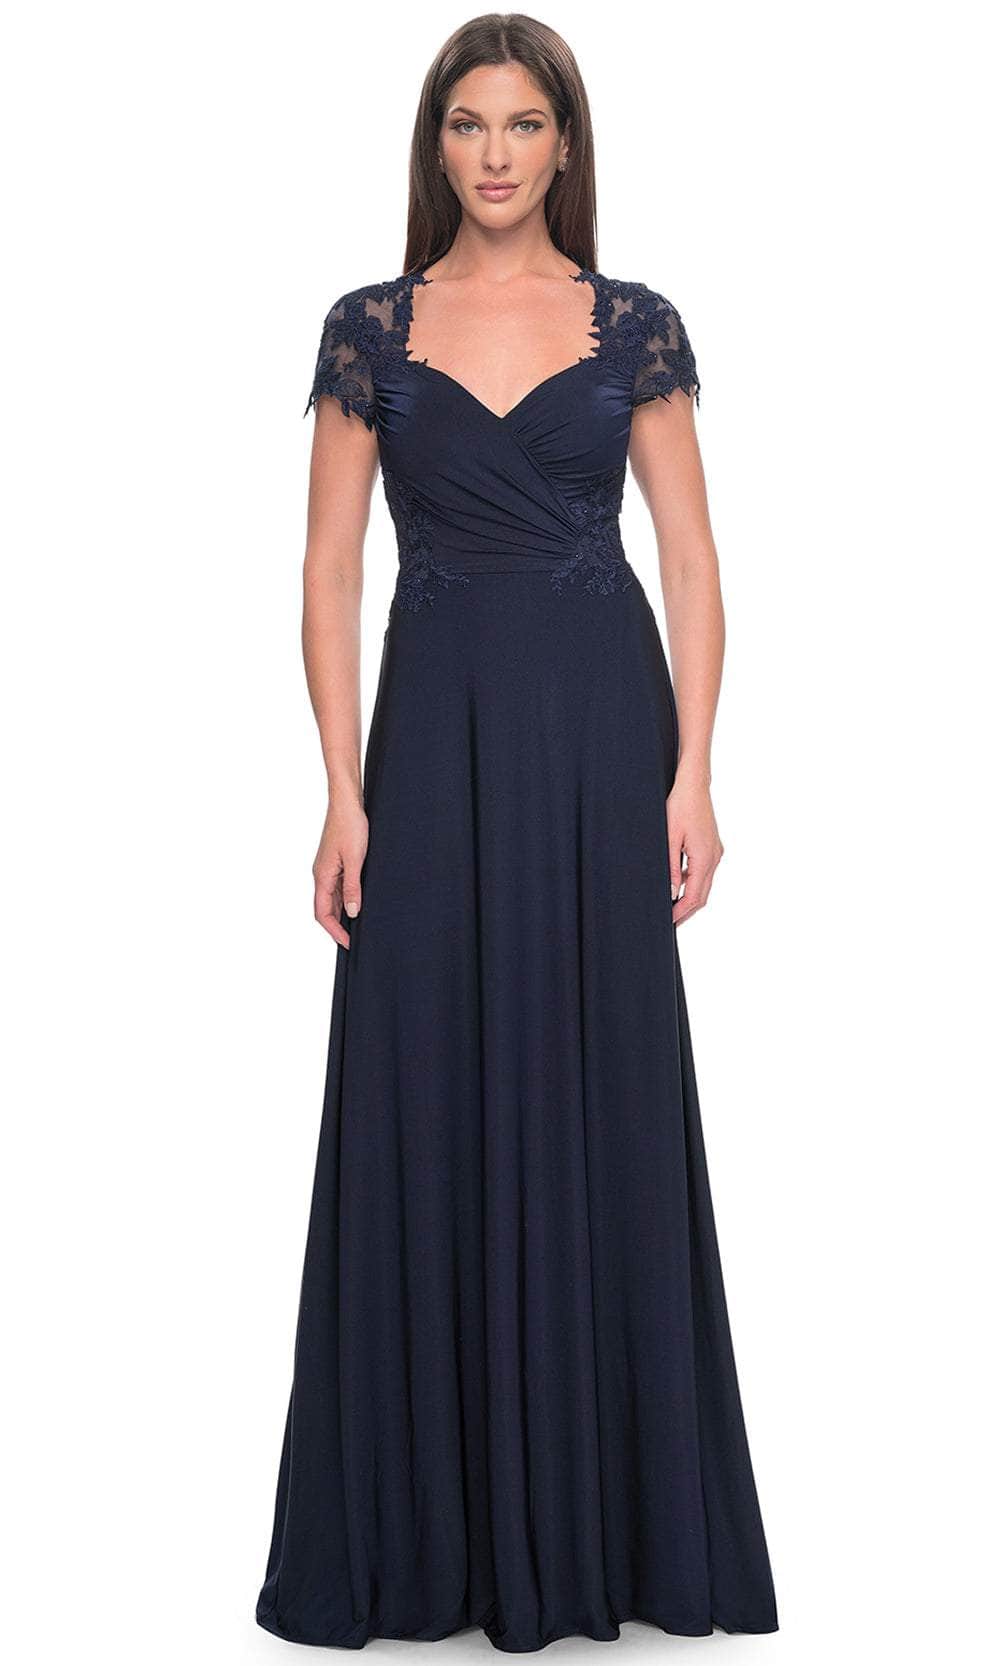 La Femme 31906 - Sweetheart A-Line Formal Dress
